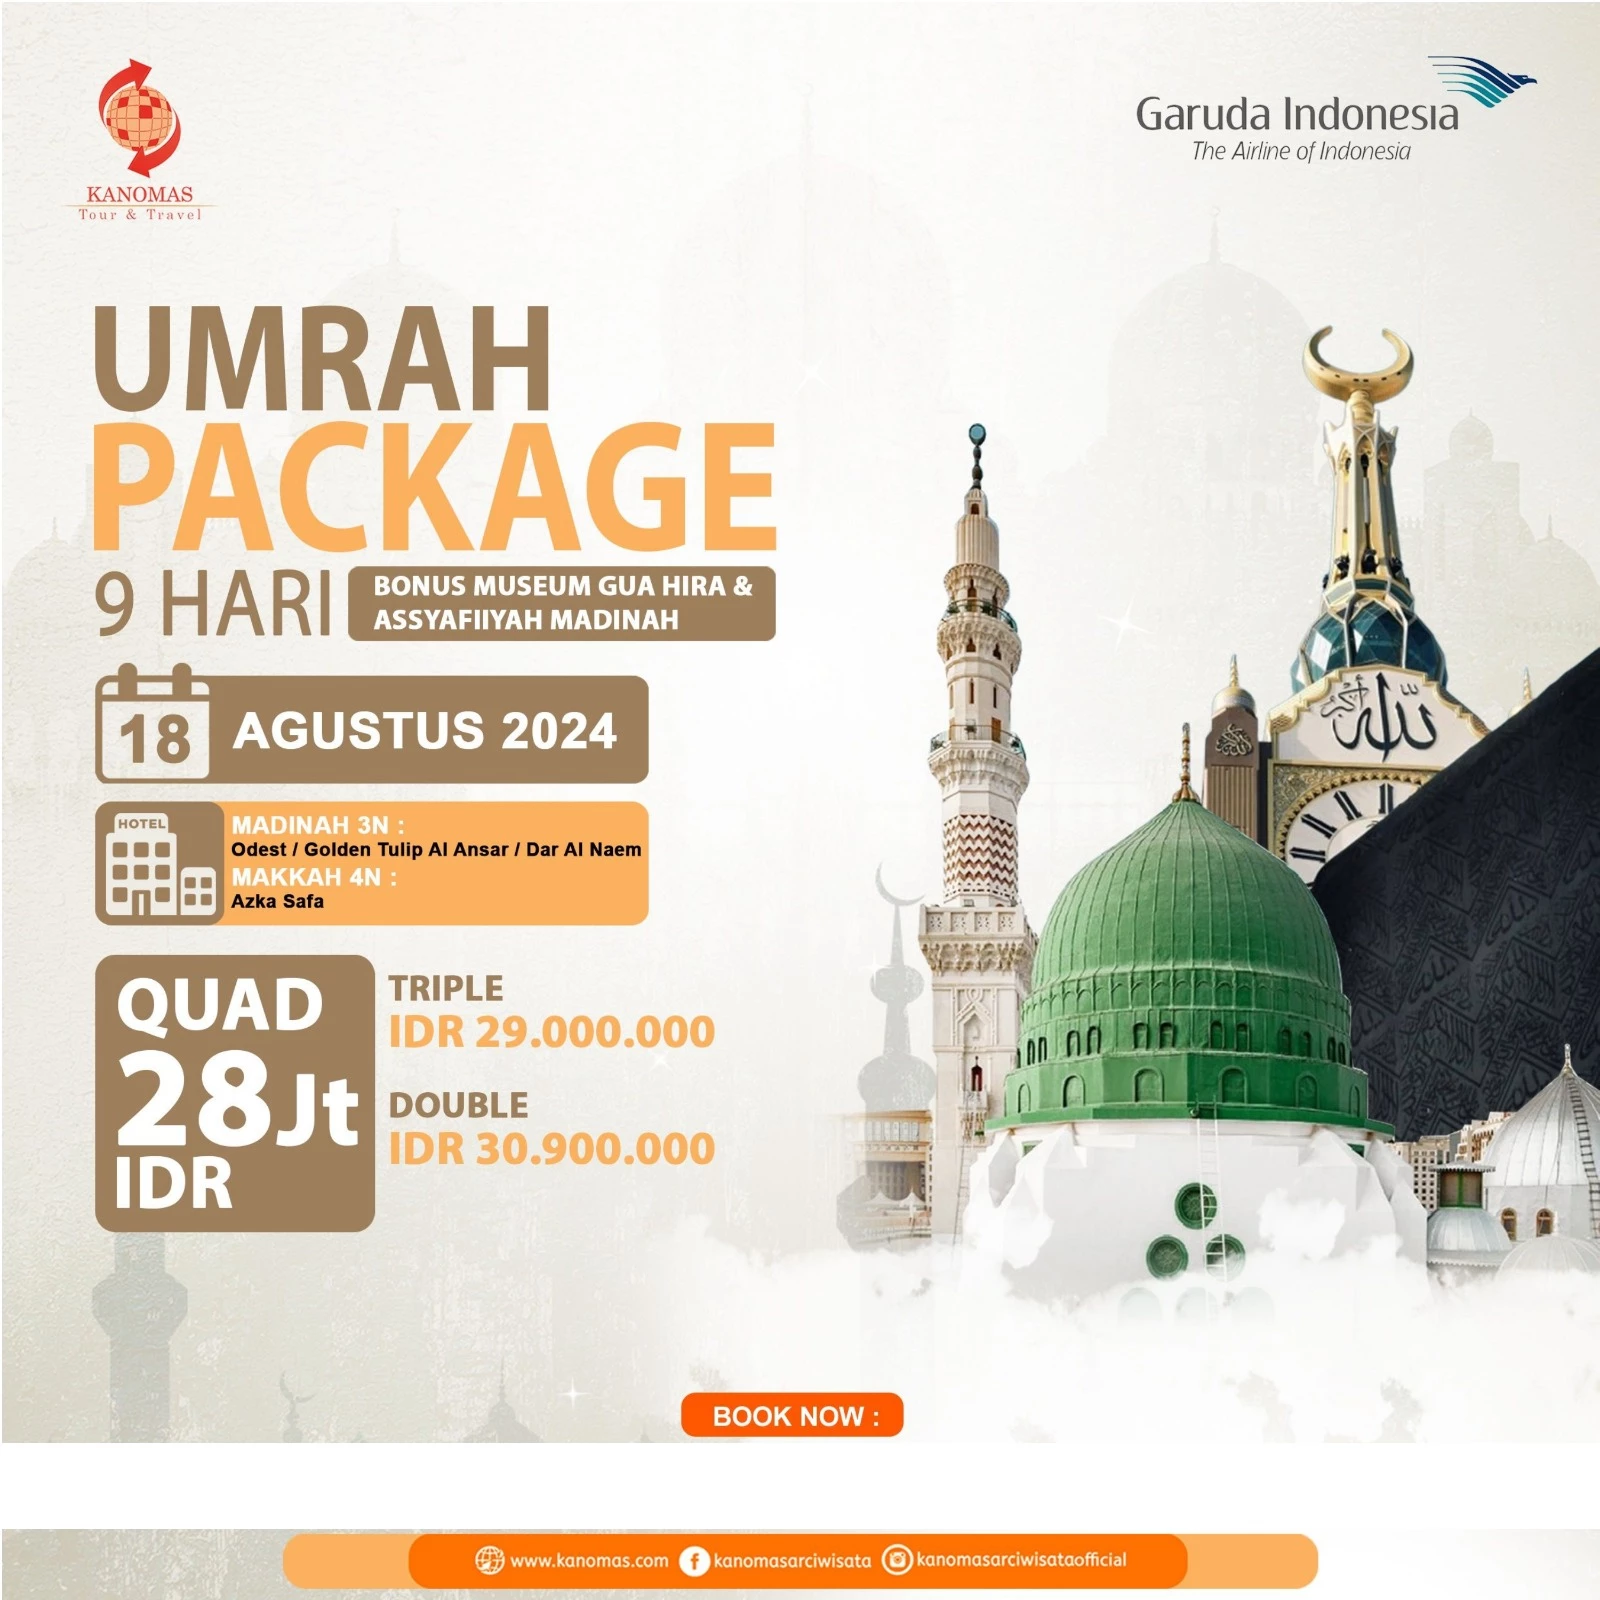 Umrah Package 9 Hari 18 Agustus 2024